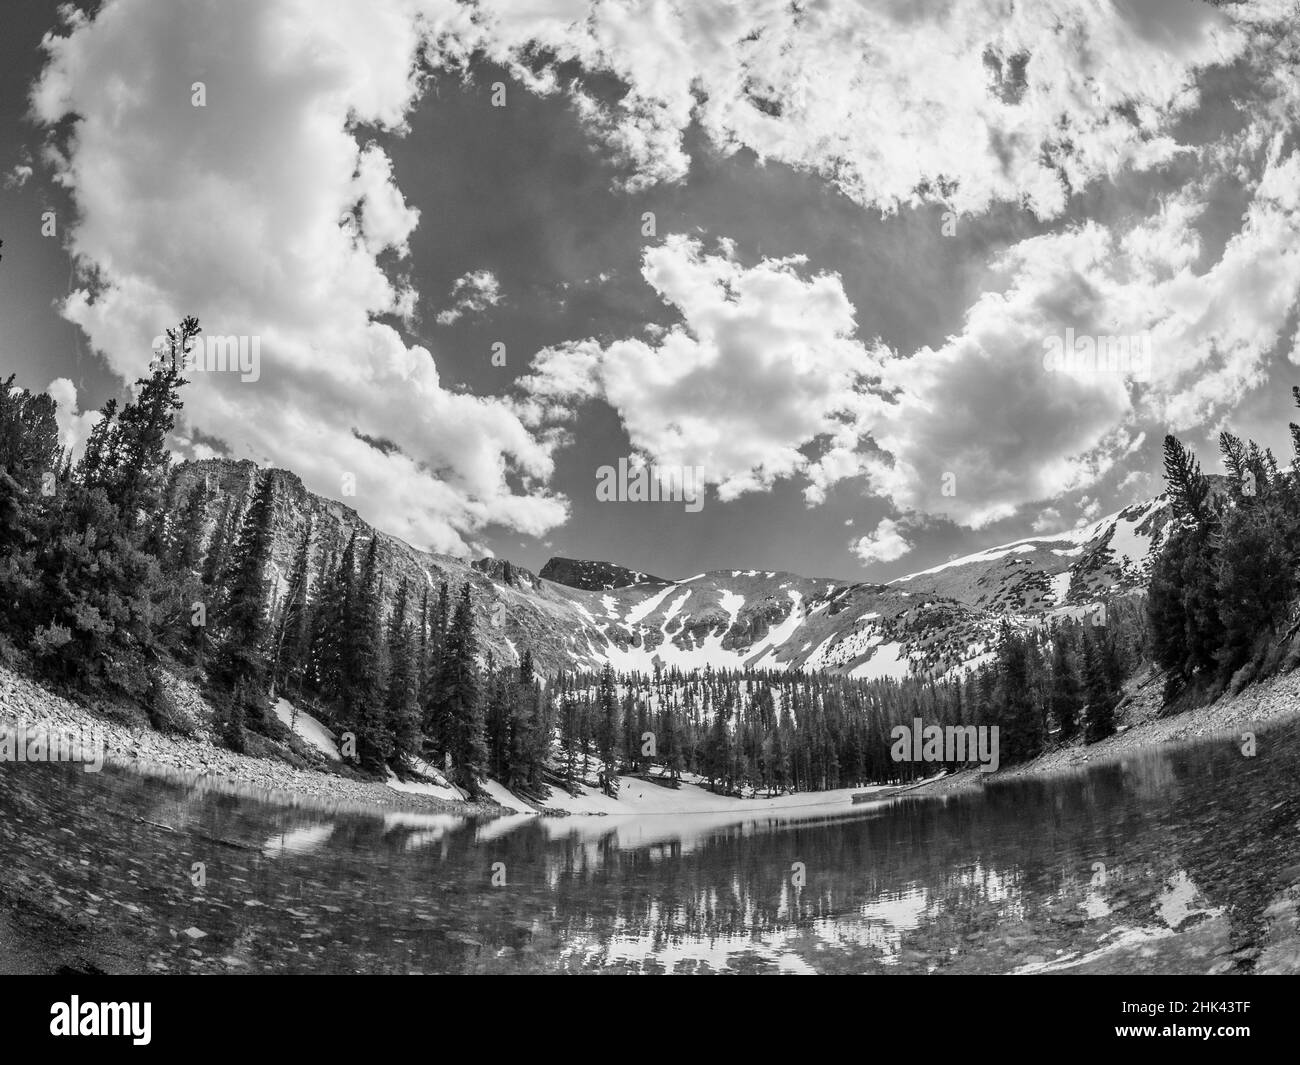 Stella Lake, Wheeler Peak, parc national de Great Basin à 10,000 mètres, après la fin de Wheeler Peak Scenic Drive, Nevada Banque D'Images